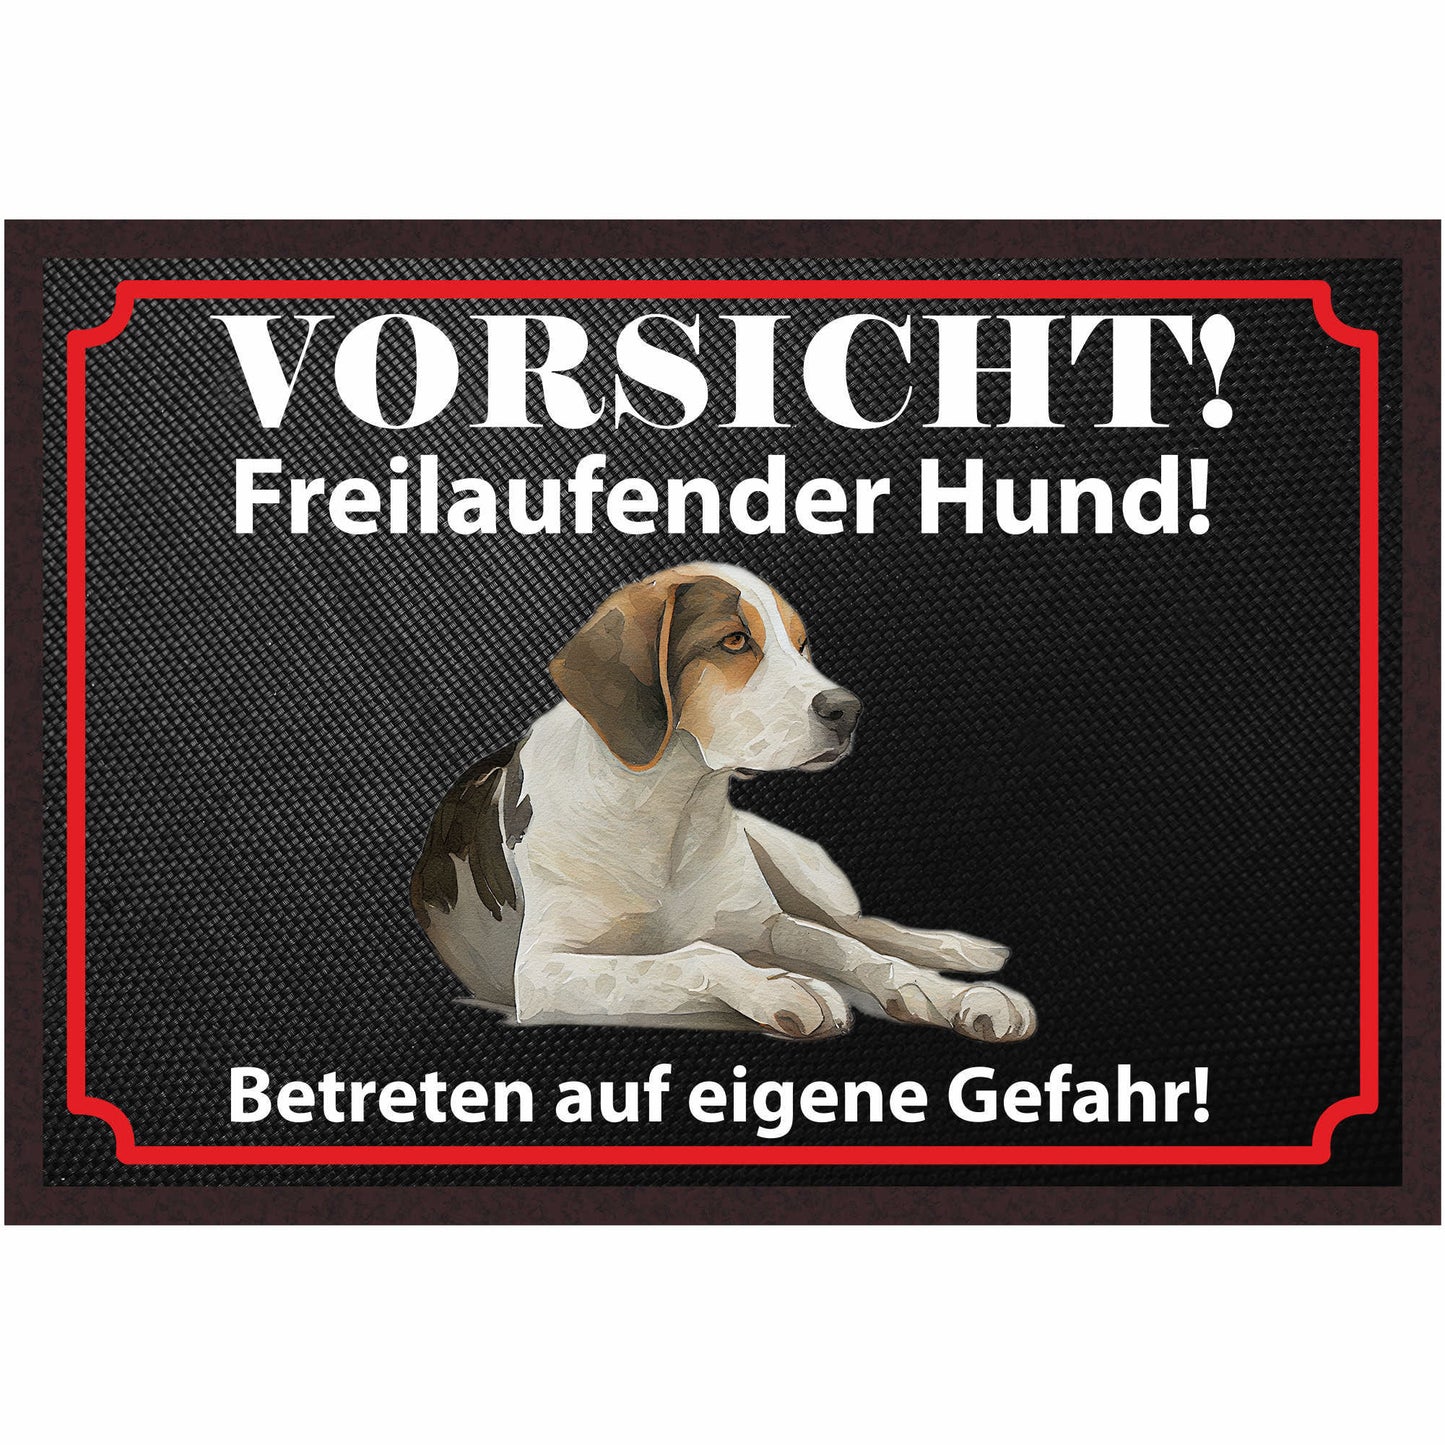 Fussmatte Hund - Beagle - 50x35 cm mit lustigem Spruch